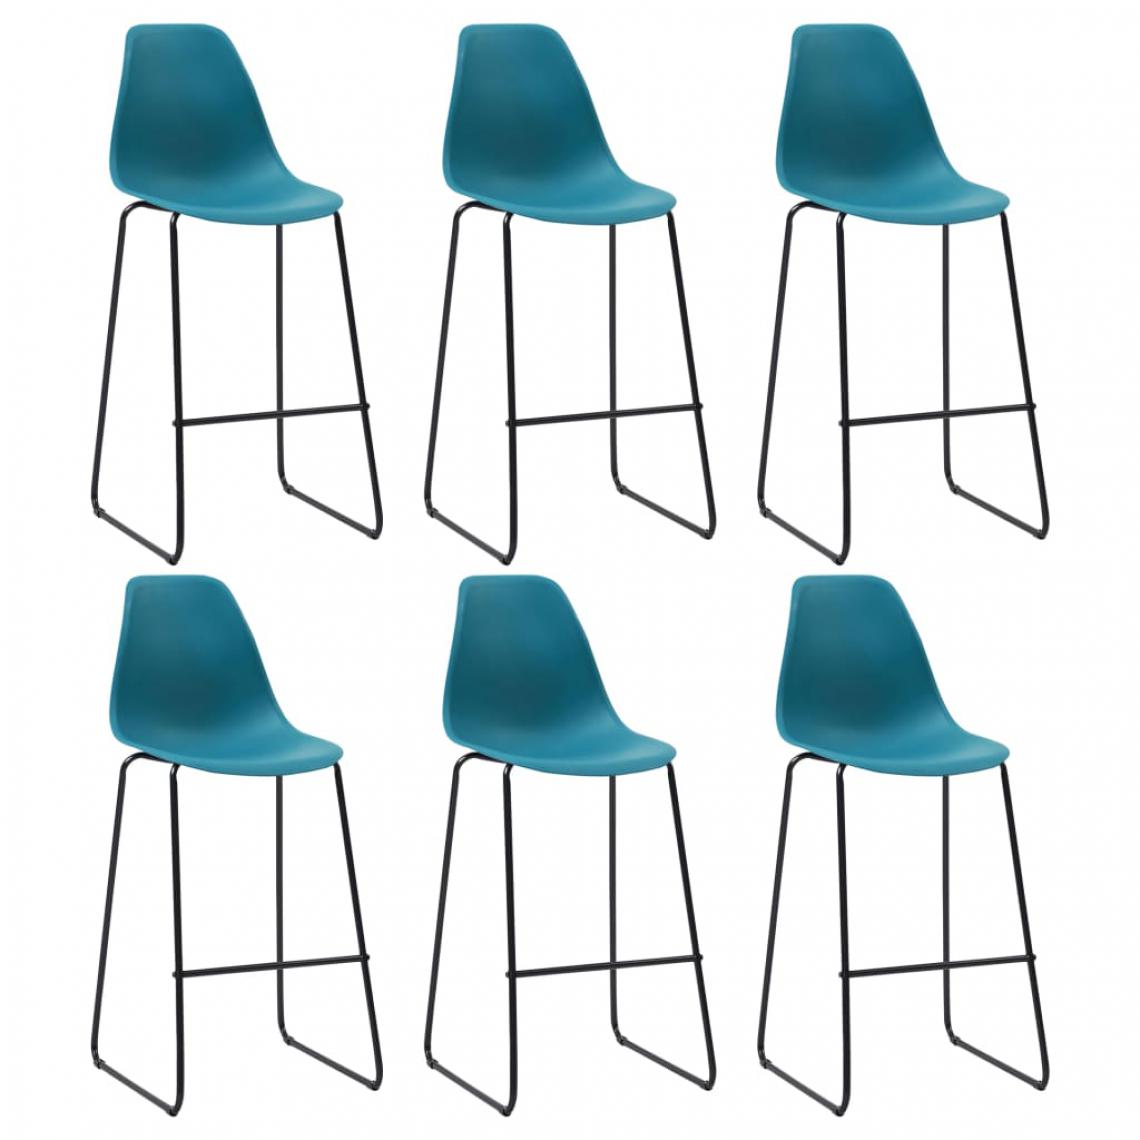 Uco - UCO Chaises de bar 6 pcs Turquoise Plastique - Chaises